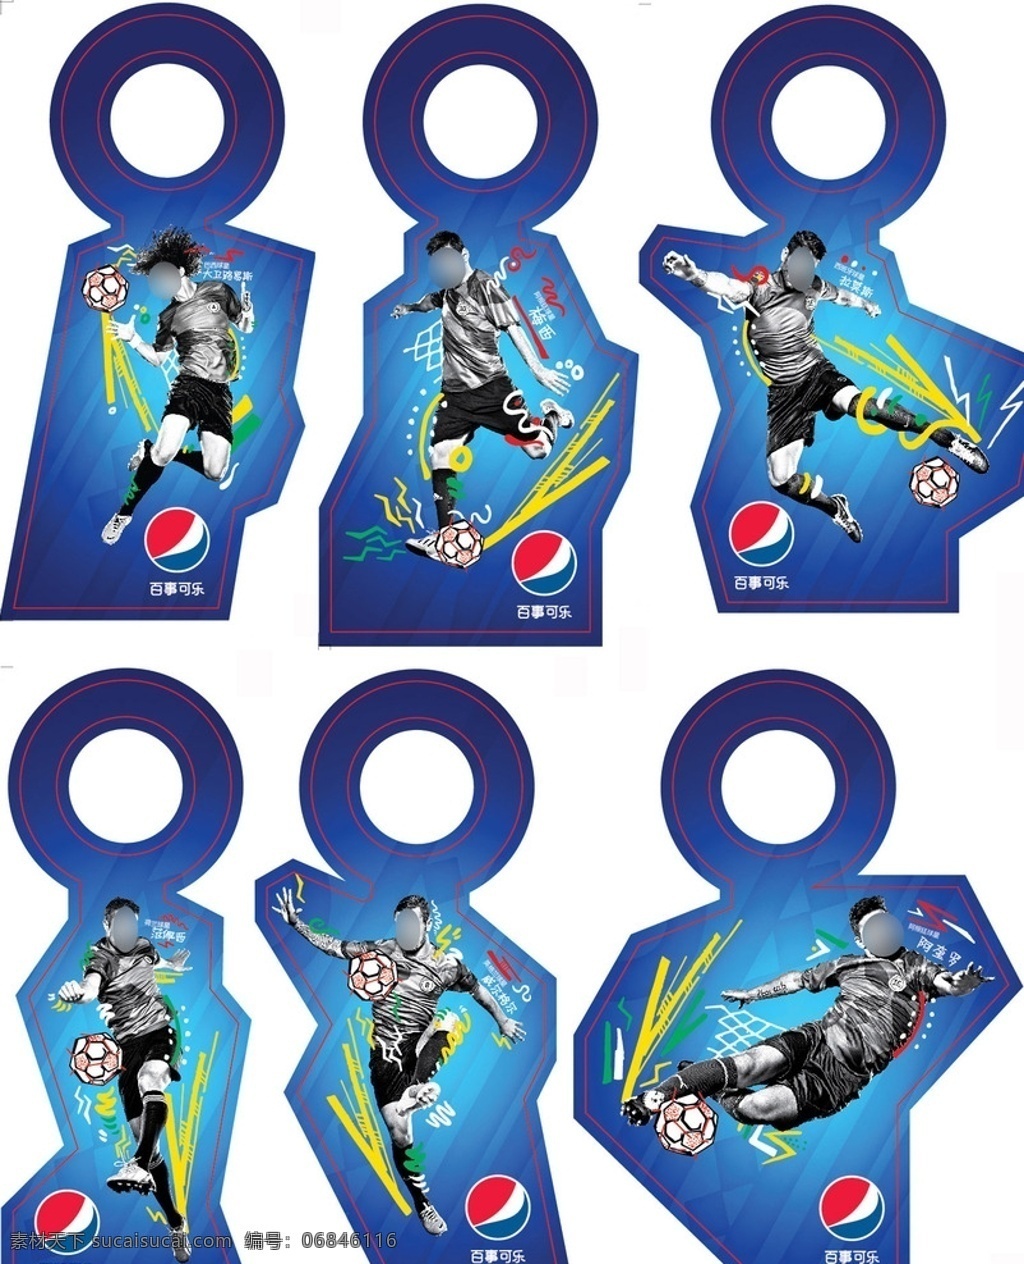 百事可乐 足球 瓶 挂 广告 pepsi 瓶挂 球星 巨星 梅西 范佩西 阿奎罗 大卫路易斯 拉莫斯 威尔希尔 射门动作 黑白照